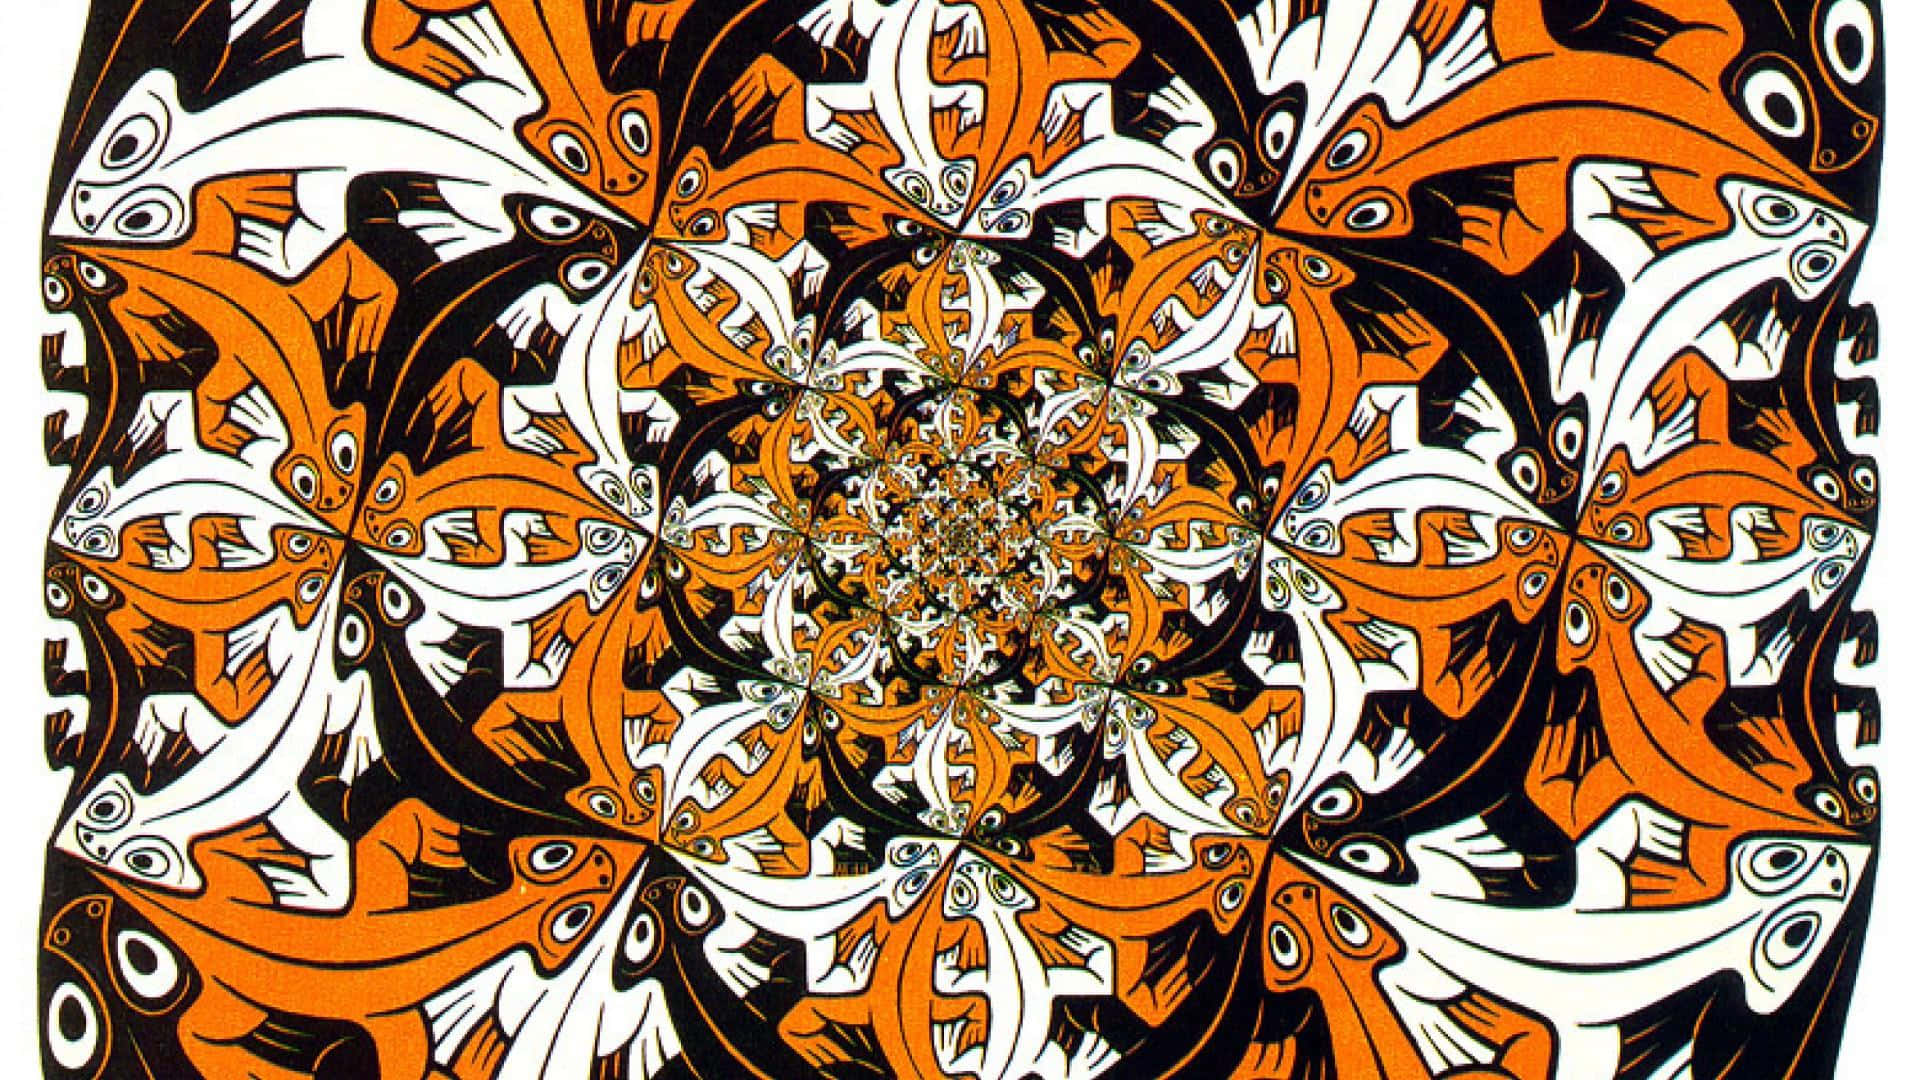 Einmandala Mit Orangen Und Weißen Mustern. Wallpaper